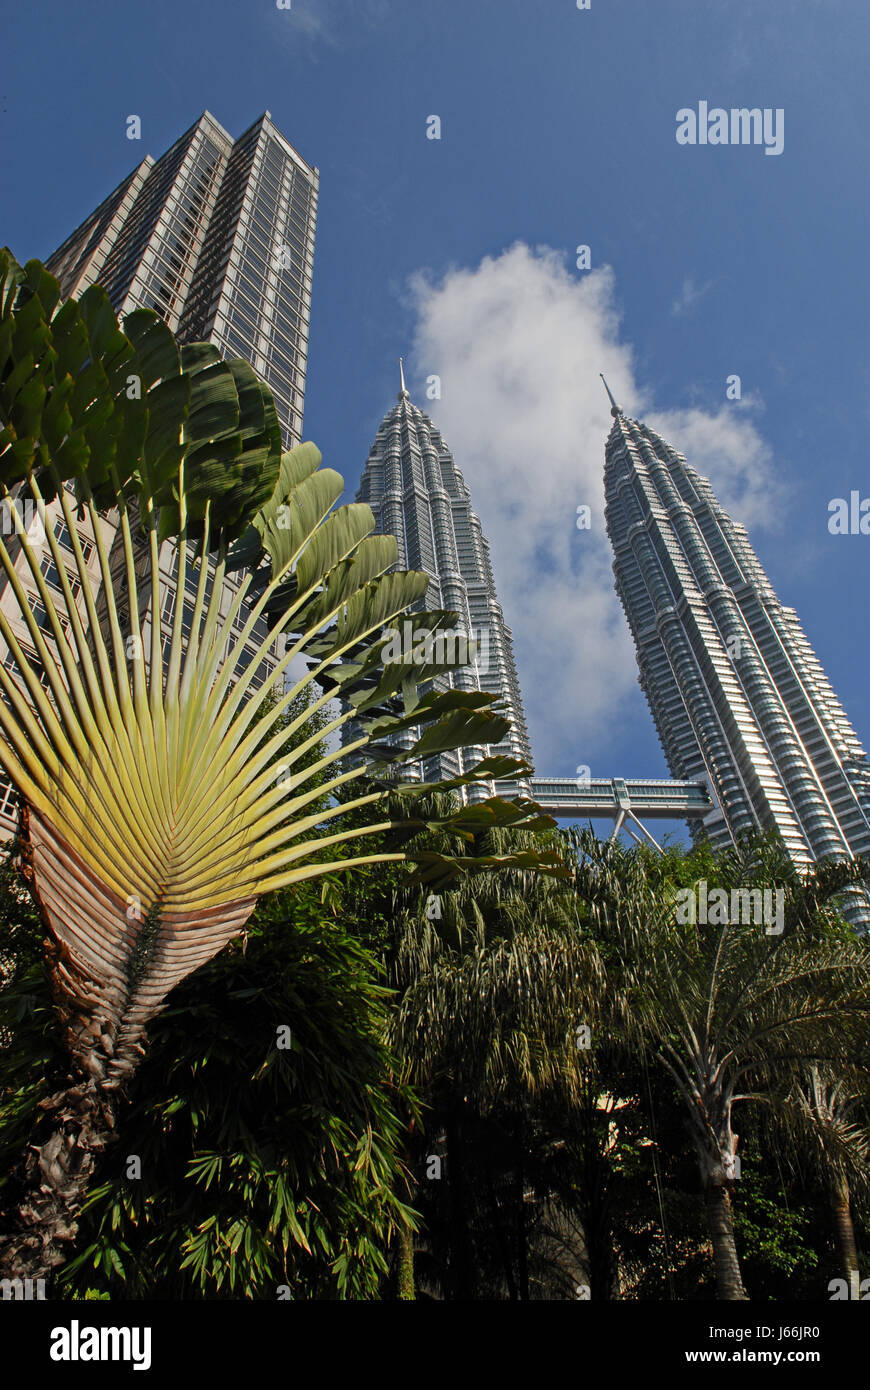 La malaisie de style architectural traditionnel de l'architecture de la construction des gratte-ciel Banque D'Images